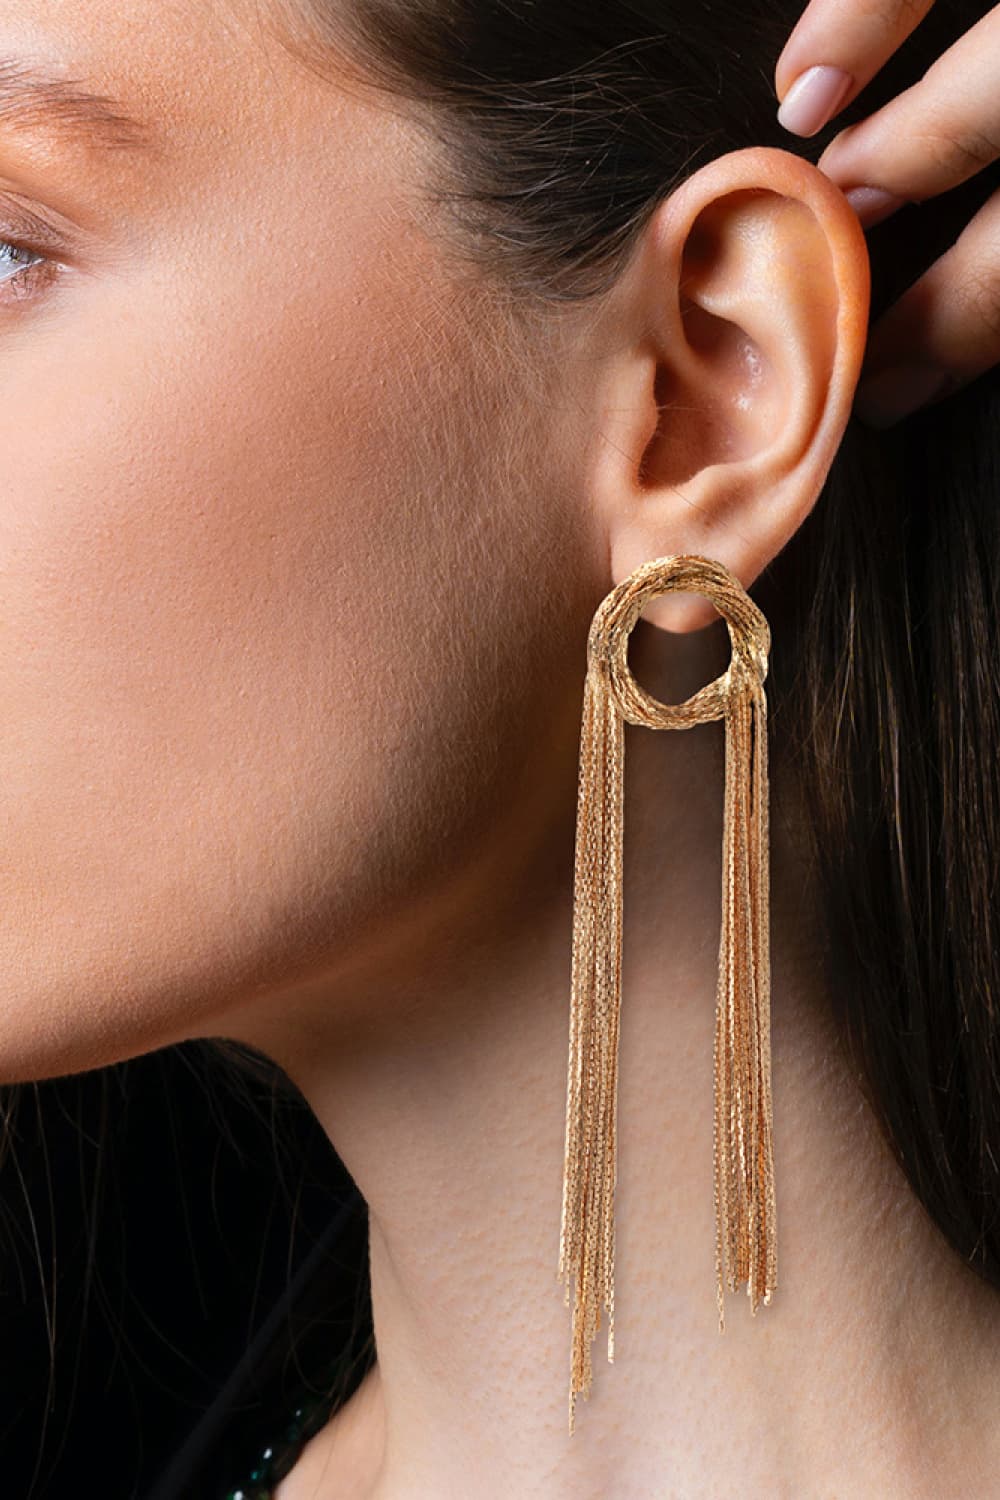 Fringed Copper Earrings